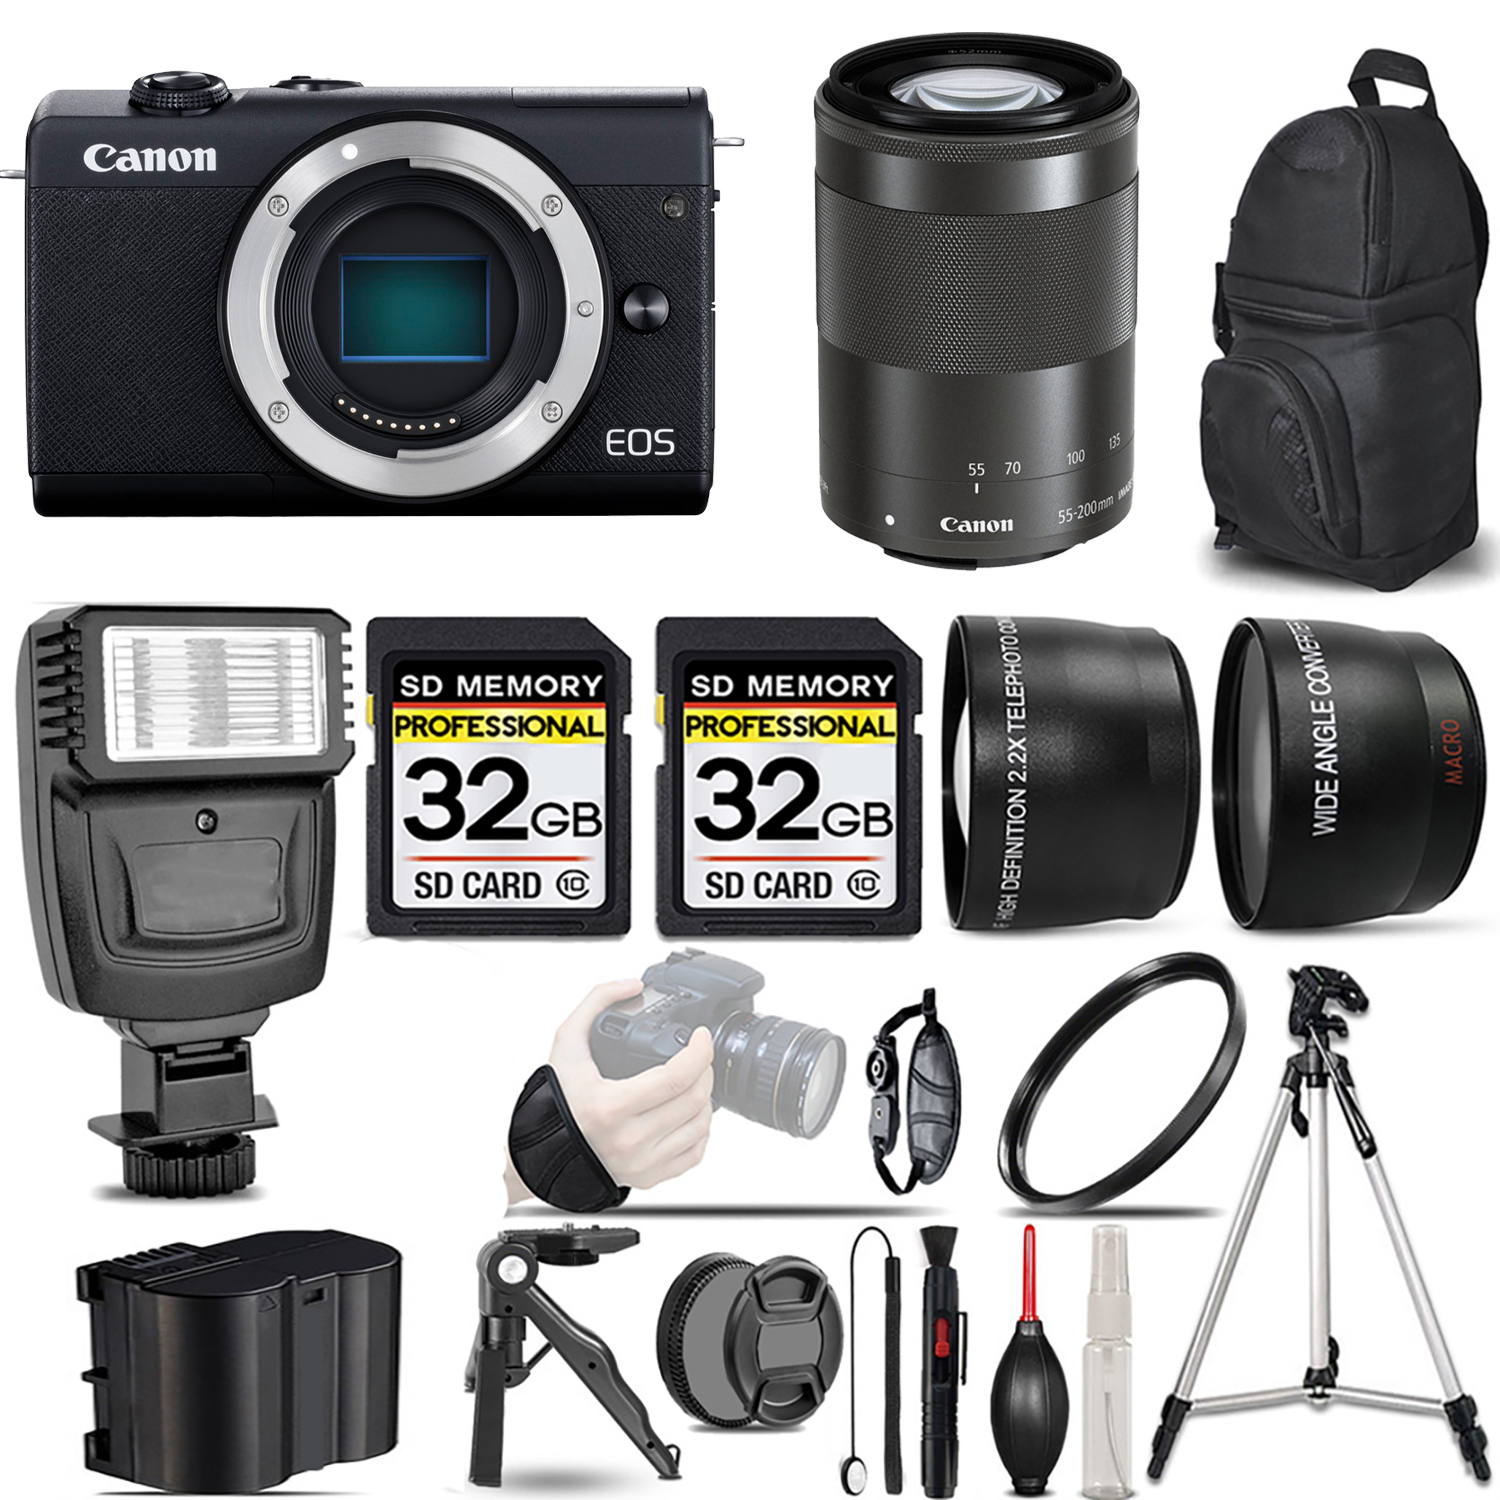 EOS M200  Camera (Black) + 55-200mm IS STM Lens (Black) + Flash + 64GB *FREE SHIPPING*